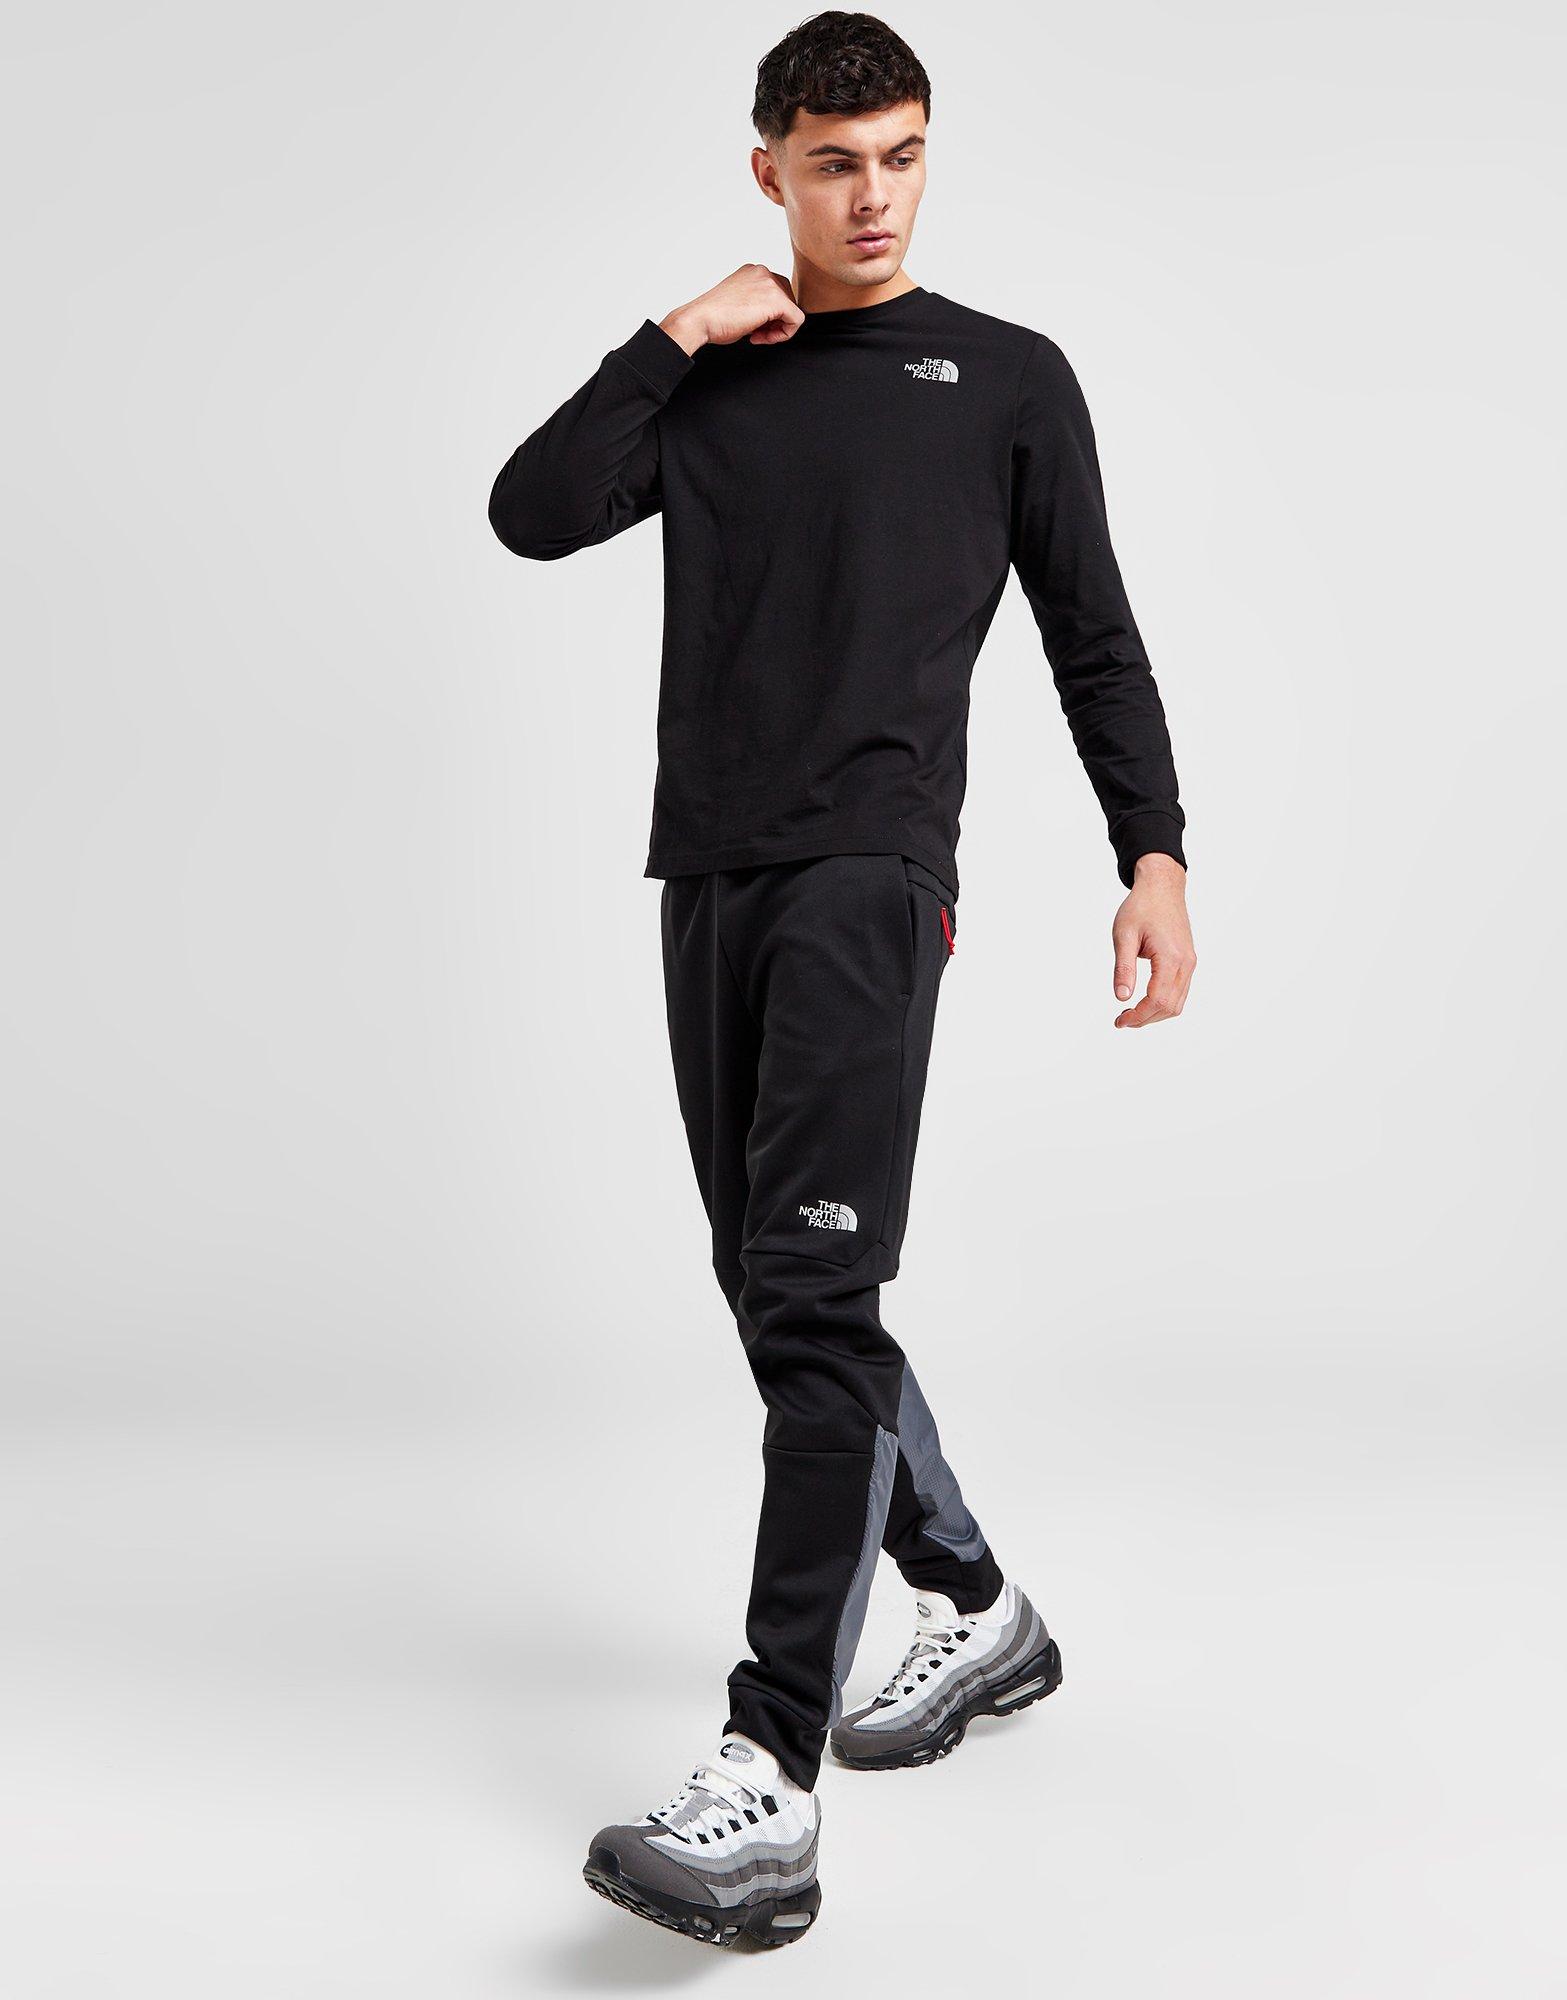 NEW Nike Sportswear Men's Woven Track Pants Jogger Size M L XL 2XL